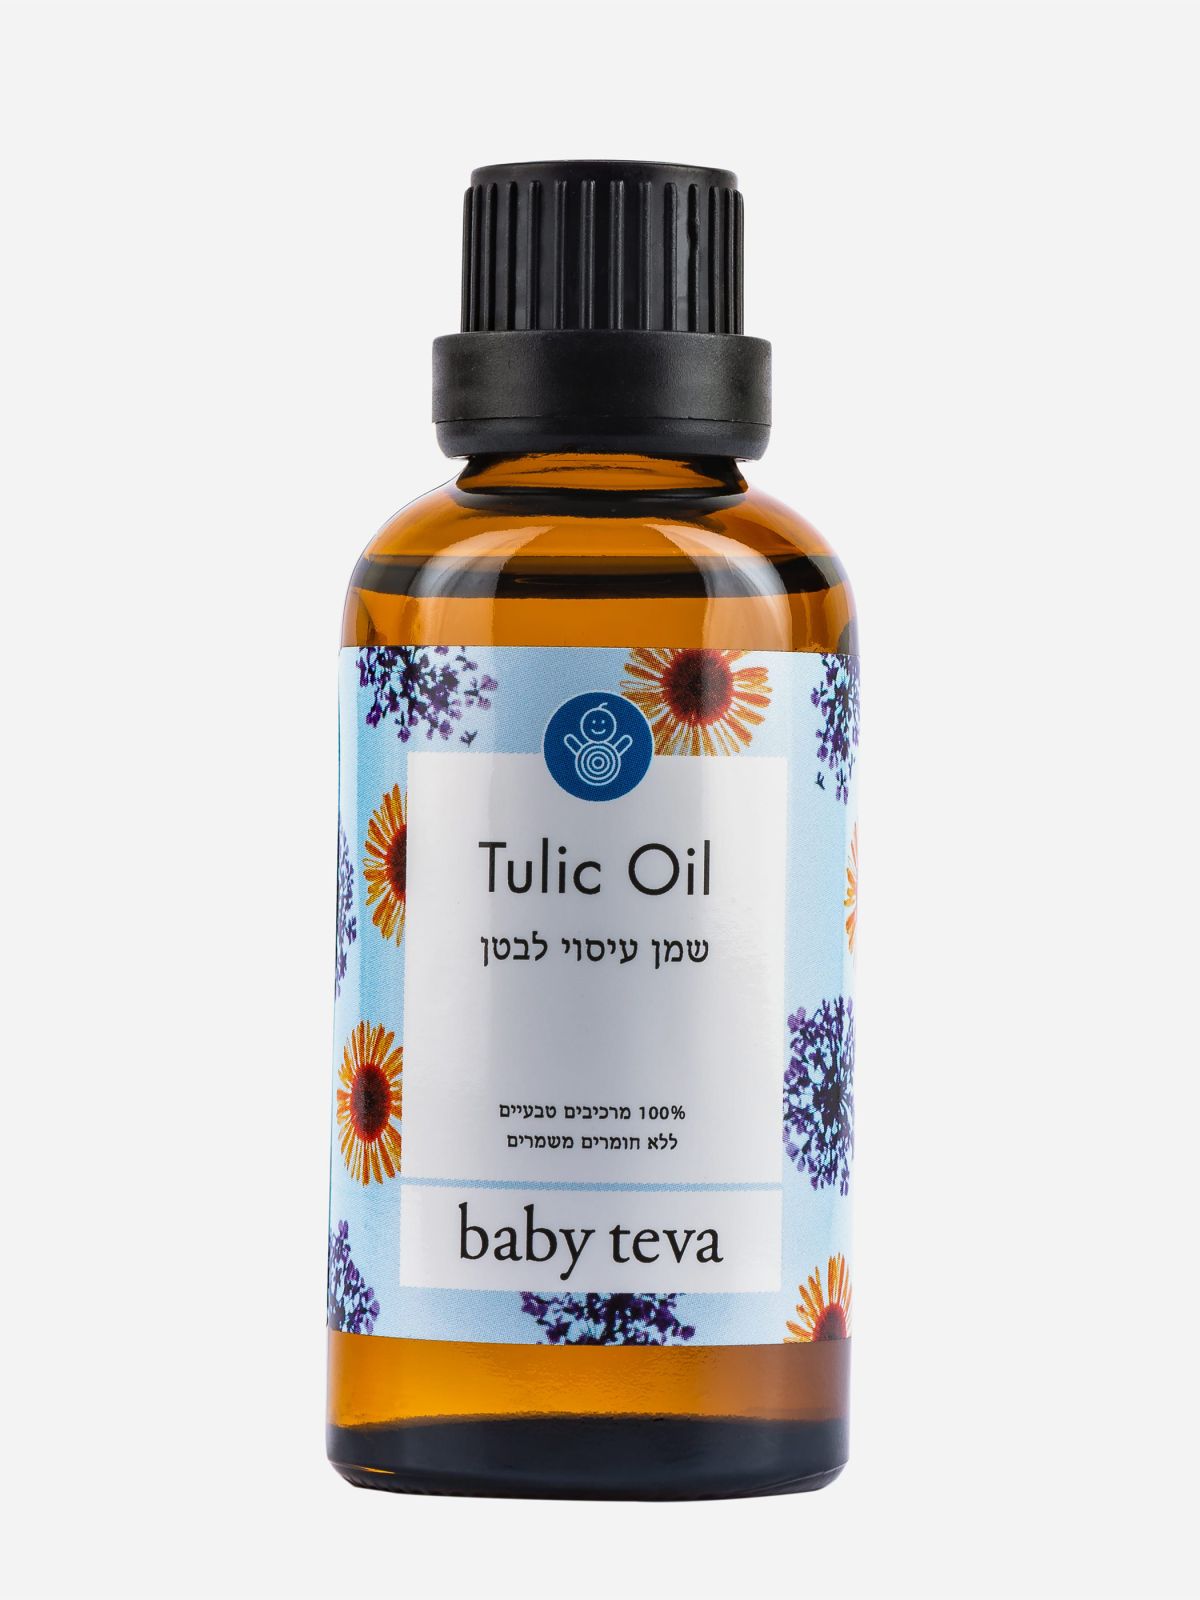  שמן טוליק עיסוי לתינוק לגזים של BABY TEVA